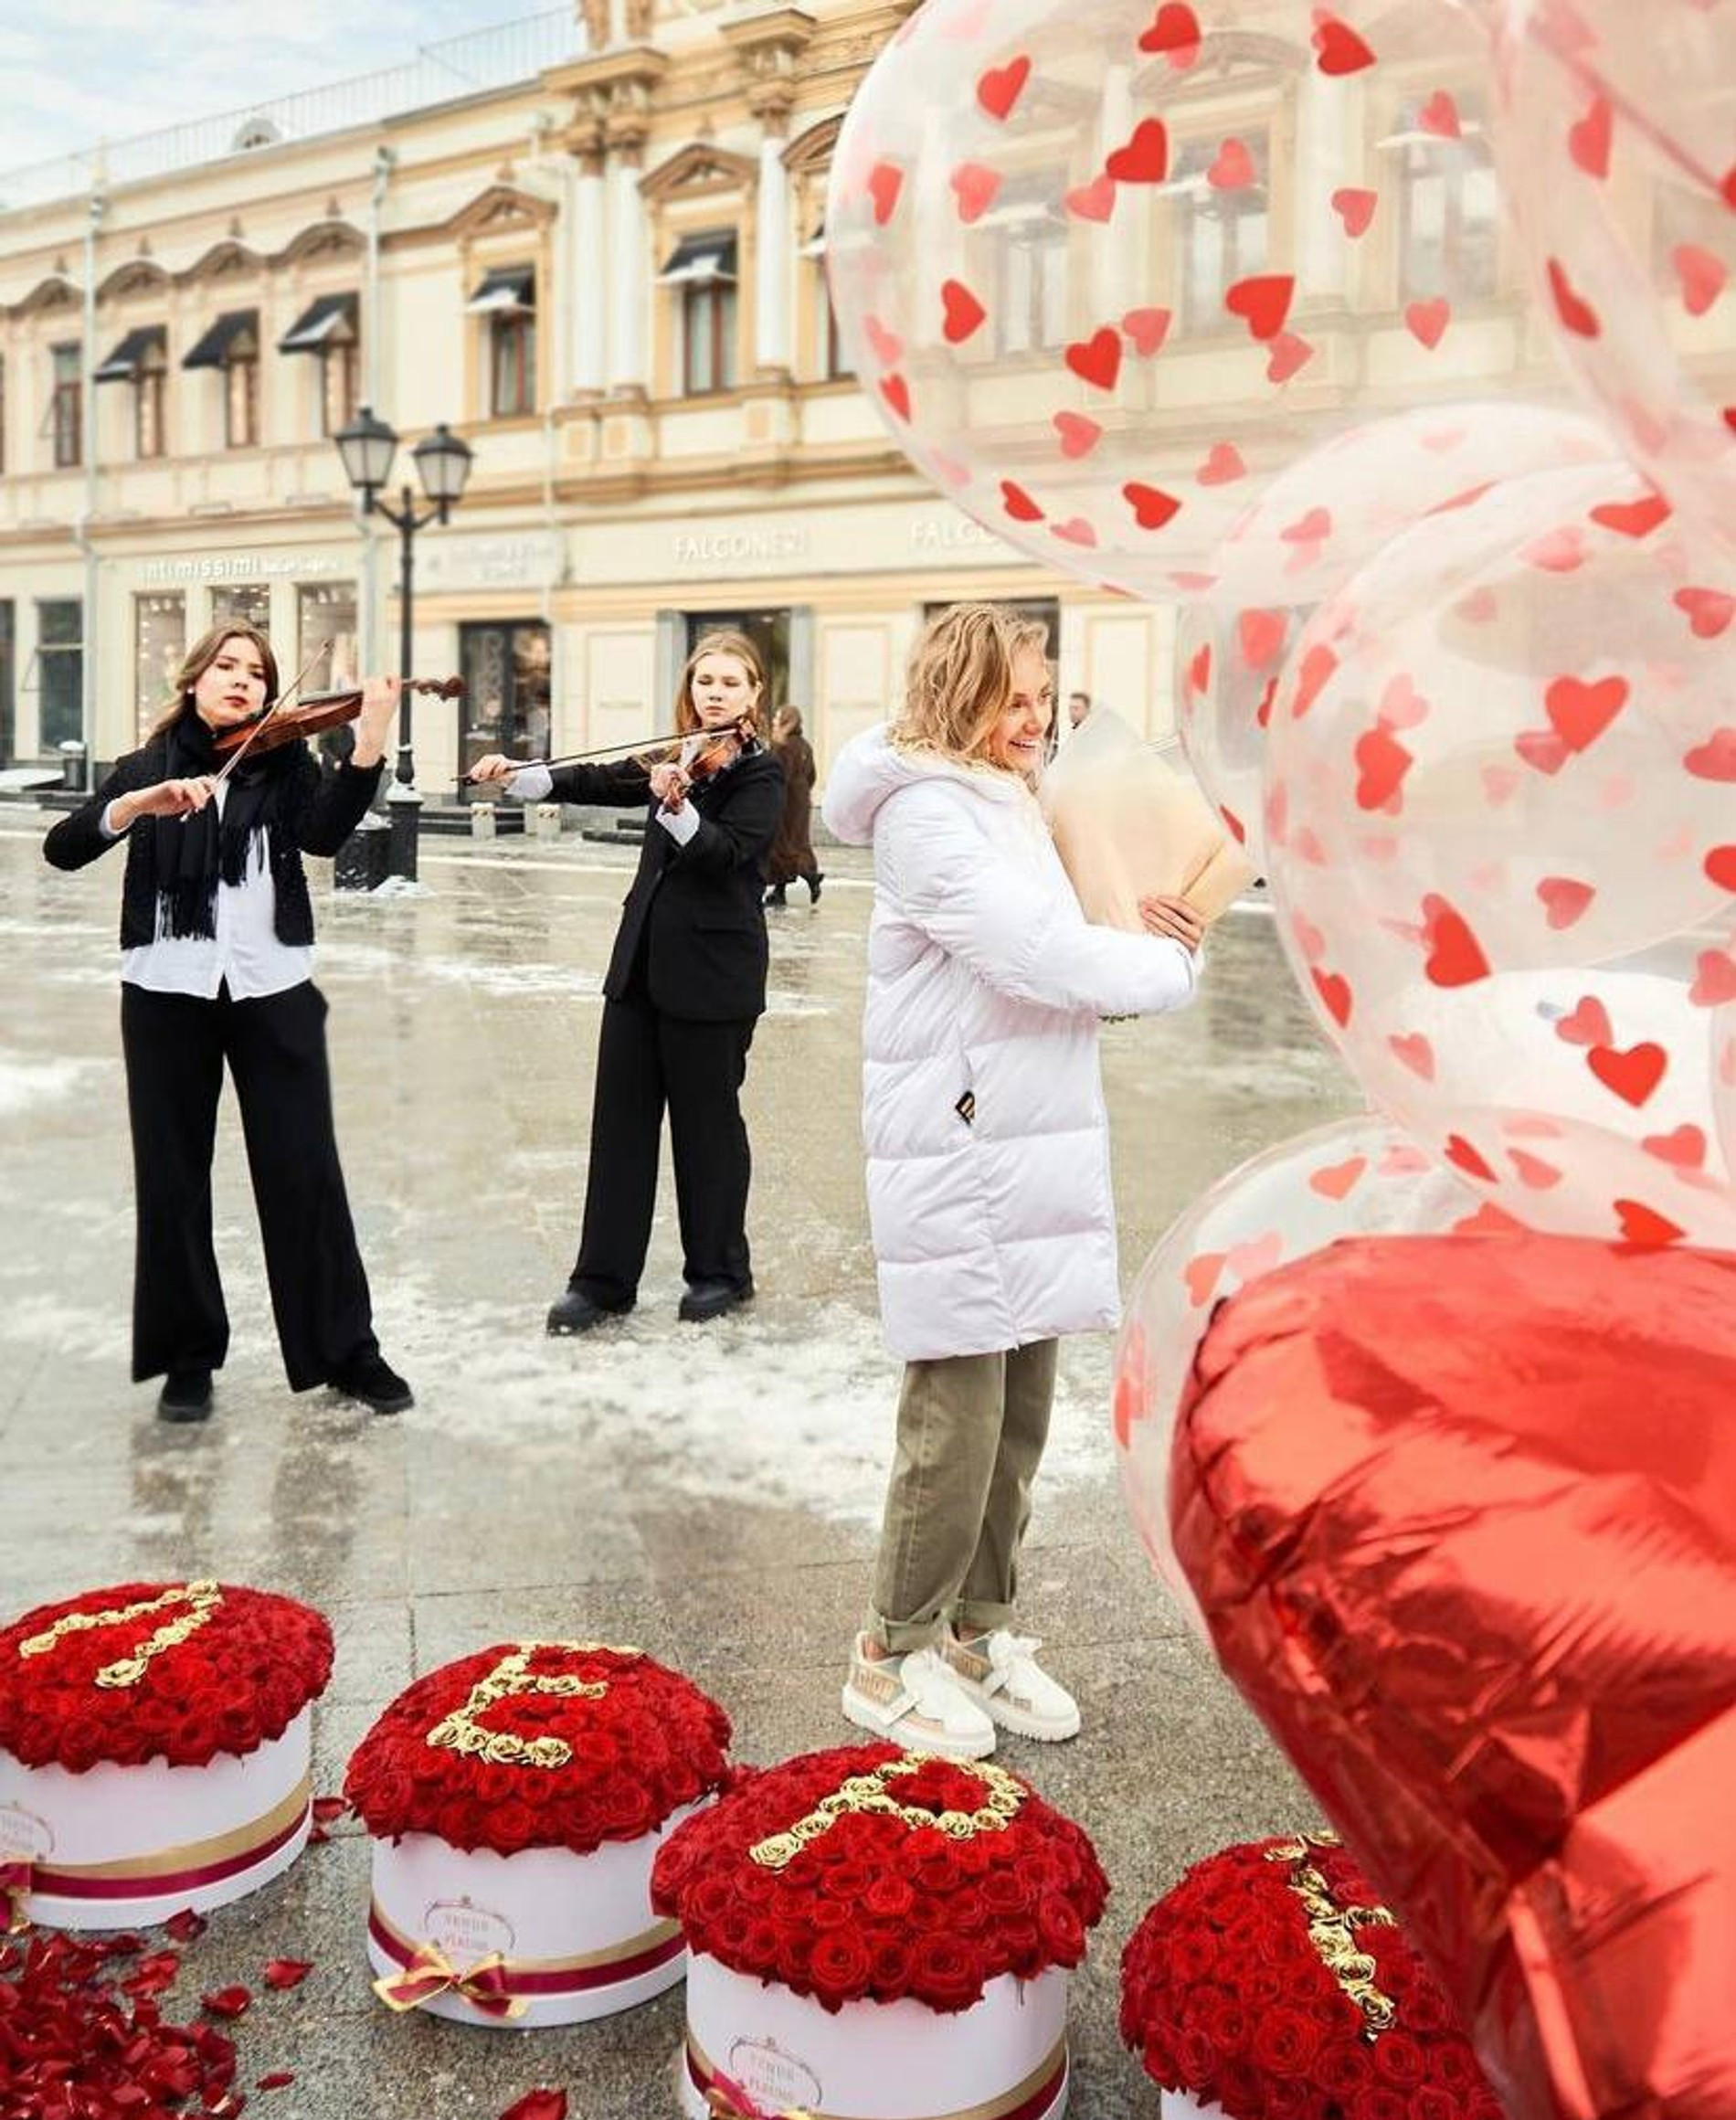 В сюрпризе участвовали корзины с цветами и девушки со скрипками
Фото: Инстаграм (запрещен в РФ) @zimamoscow